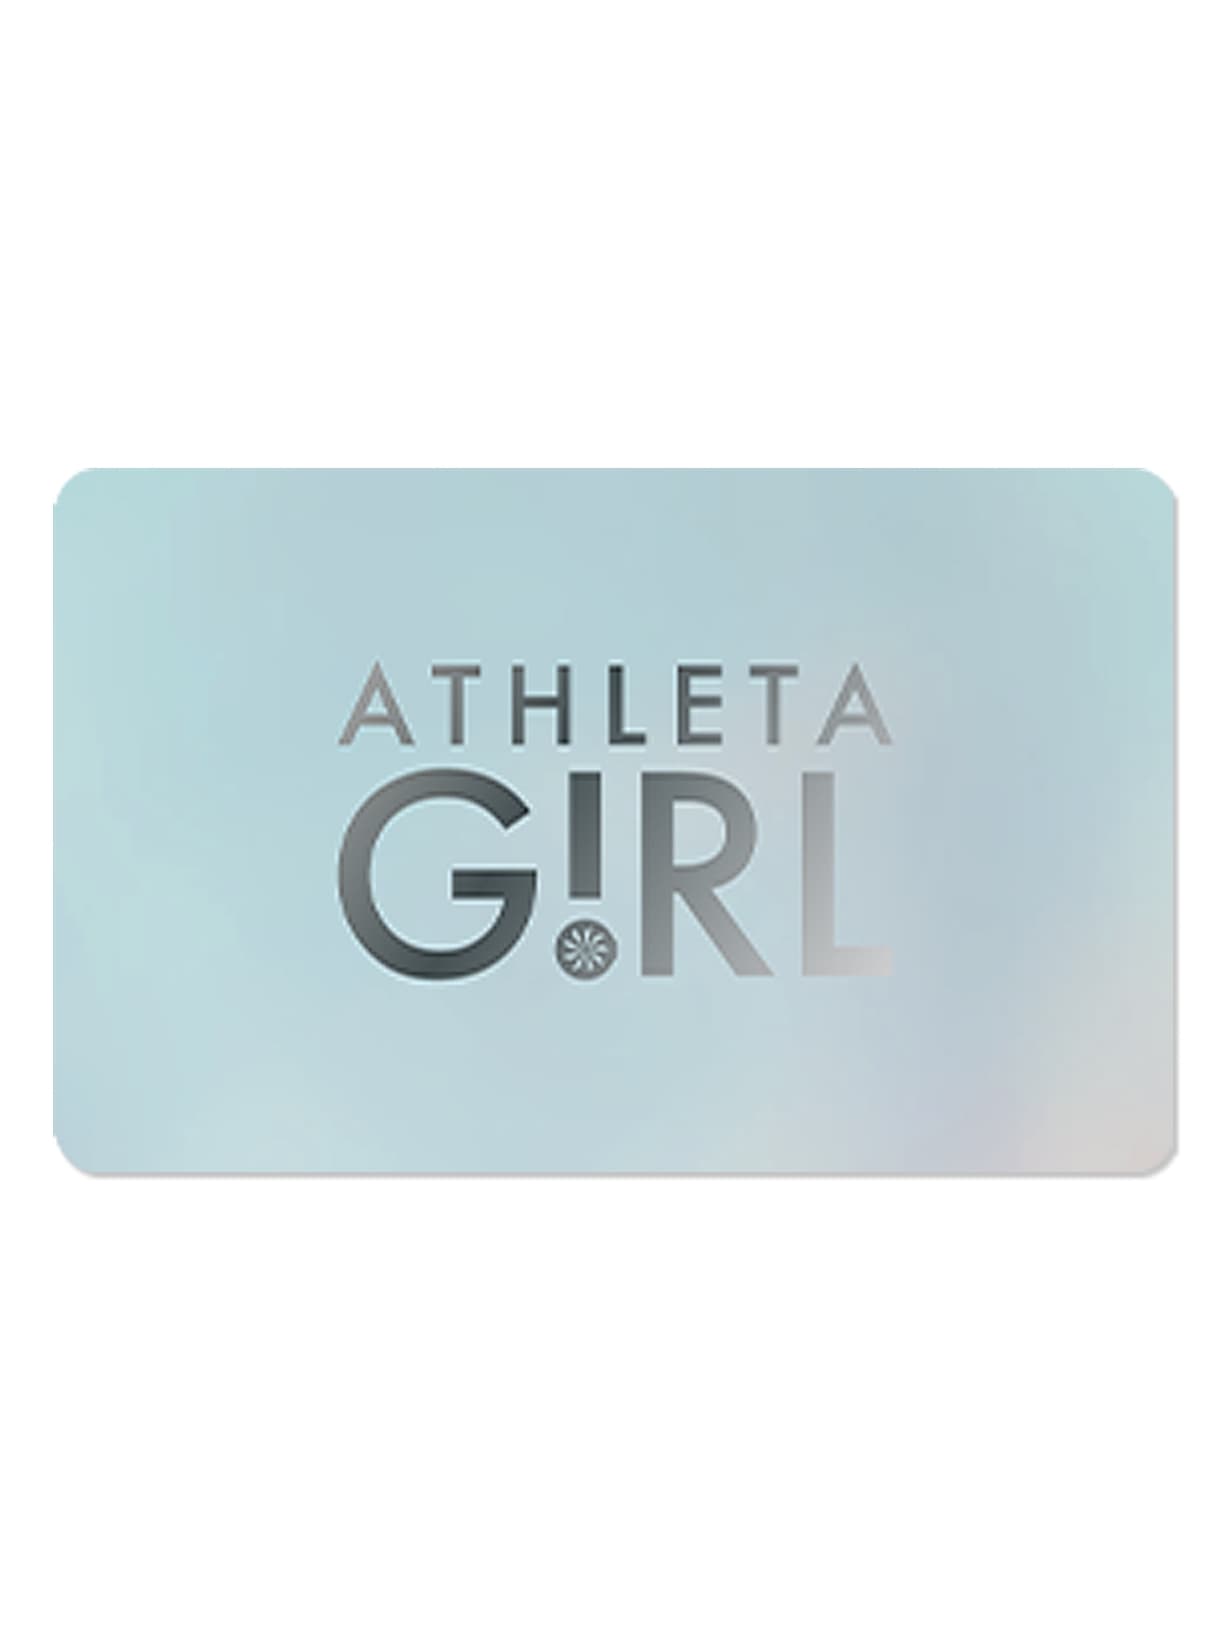 Athleta Girl GiftCard | Athleta